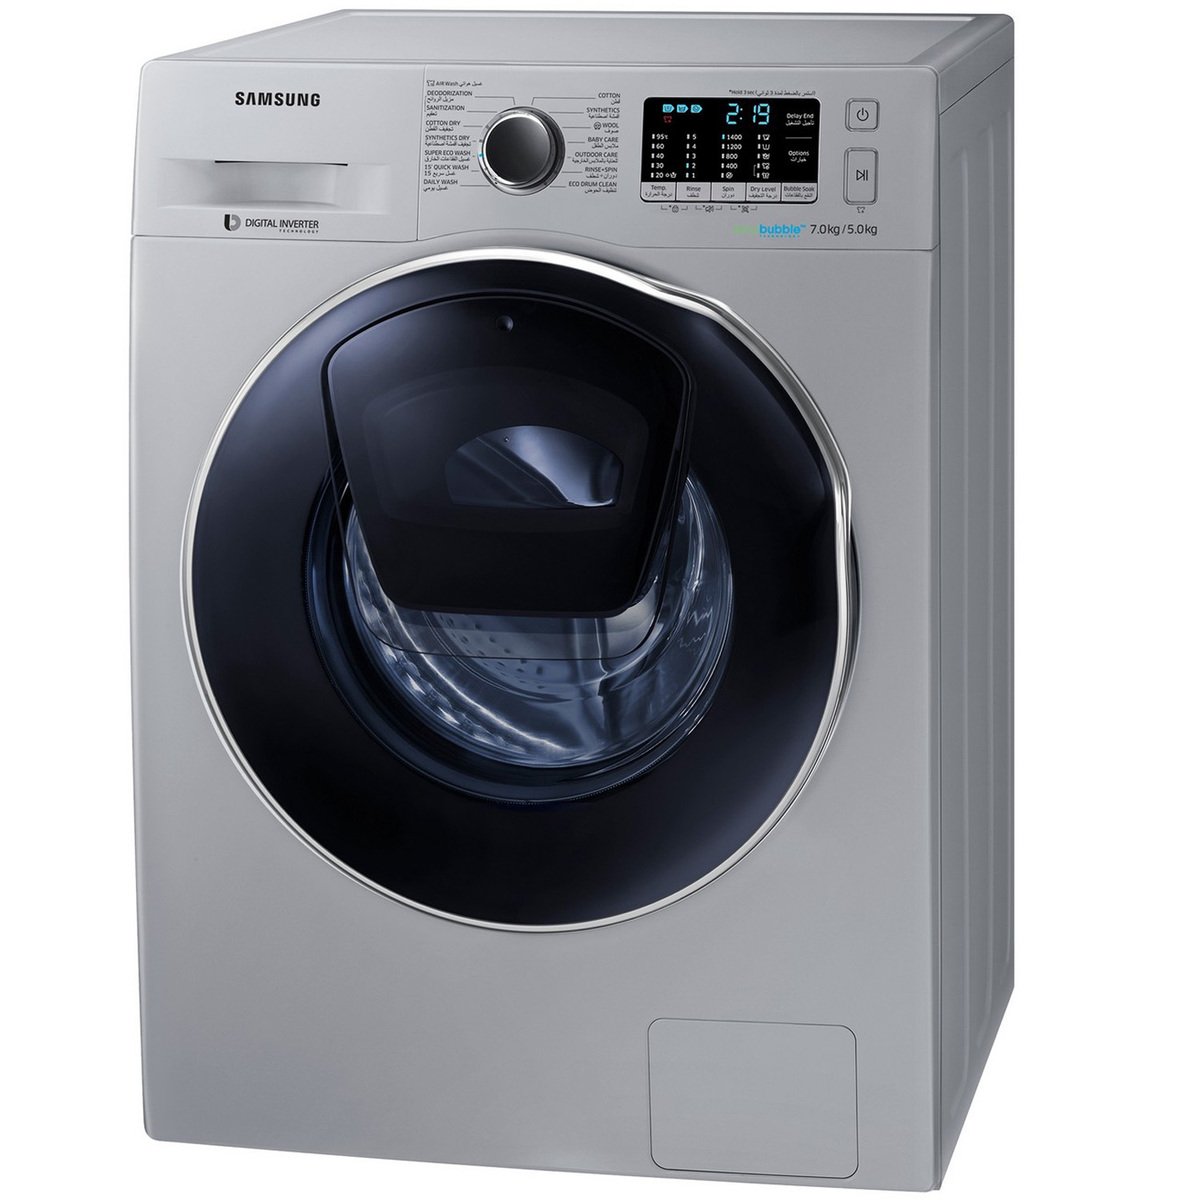 Samsung Front Load Washer & Dryer WD70K5410OS 7/5Kg